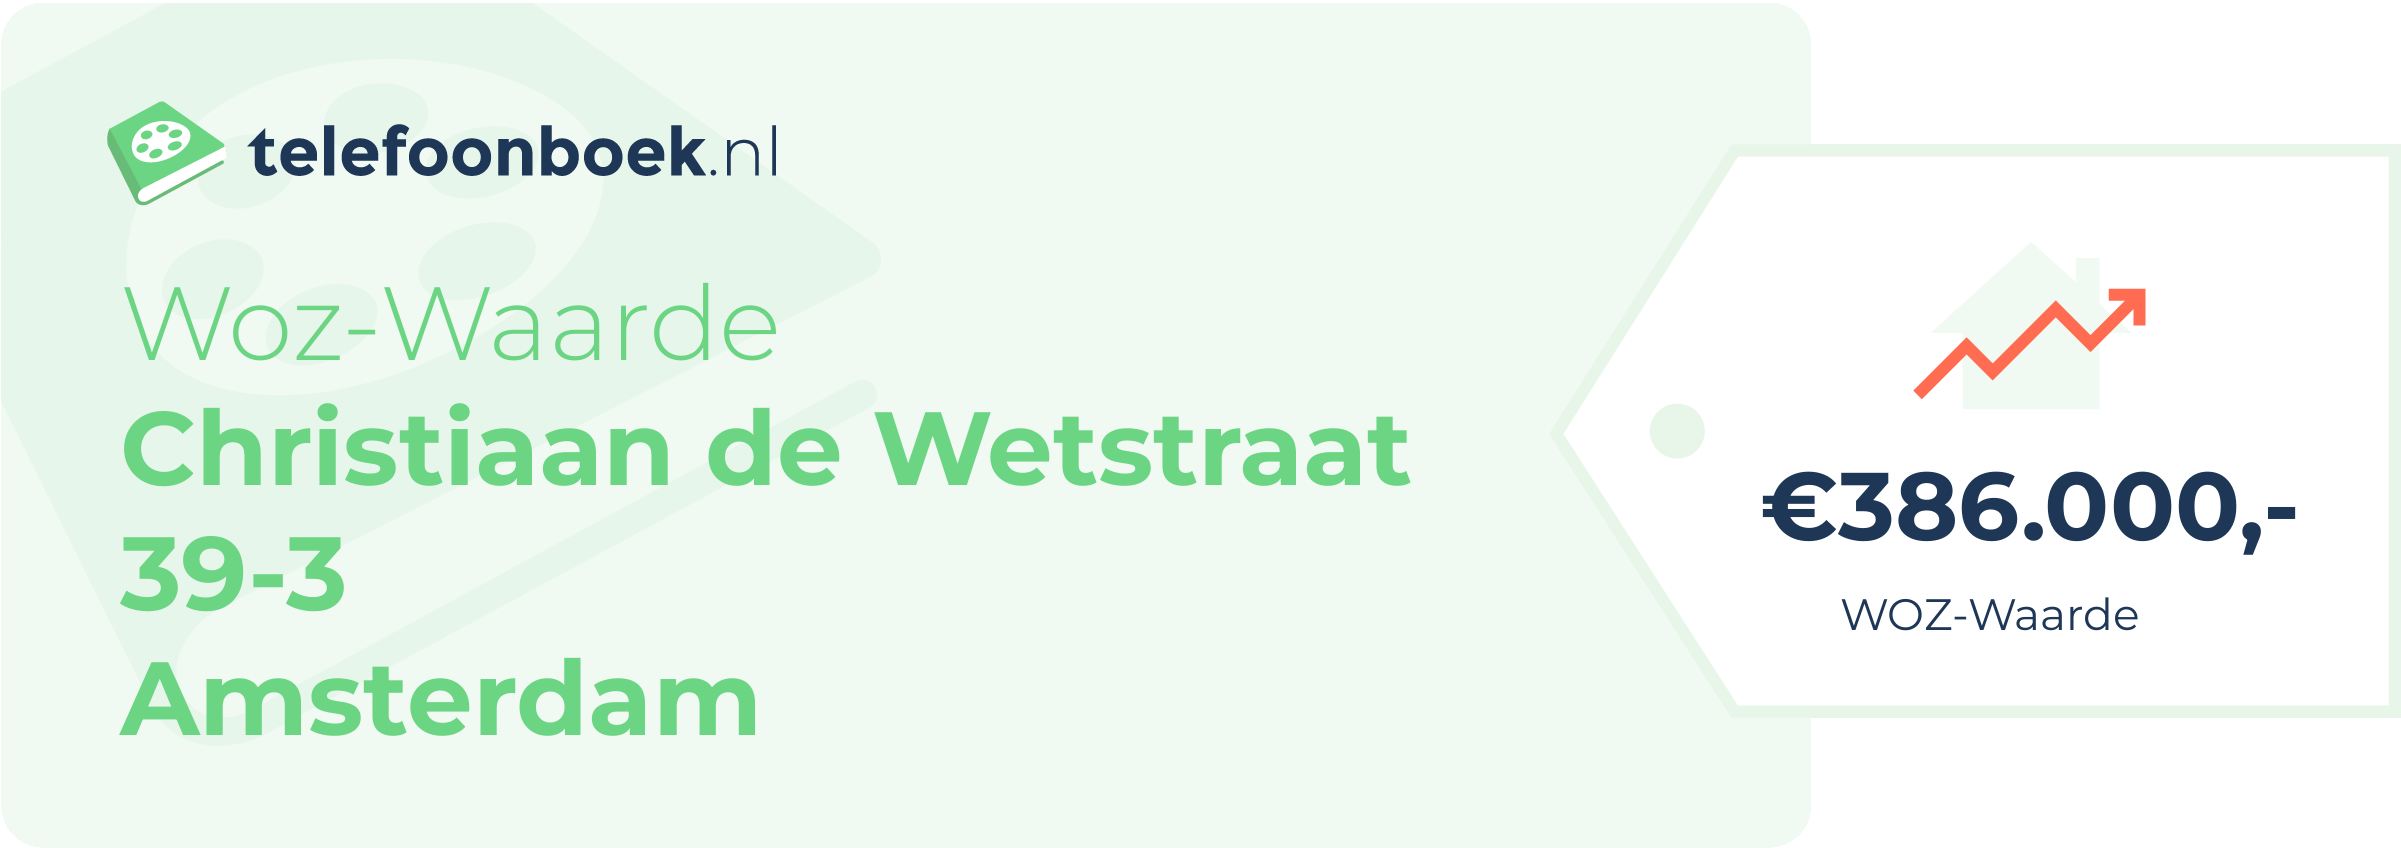 WOZ-waarde Christiaan De Wetstraat 39-3 Amsterdam